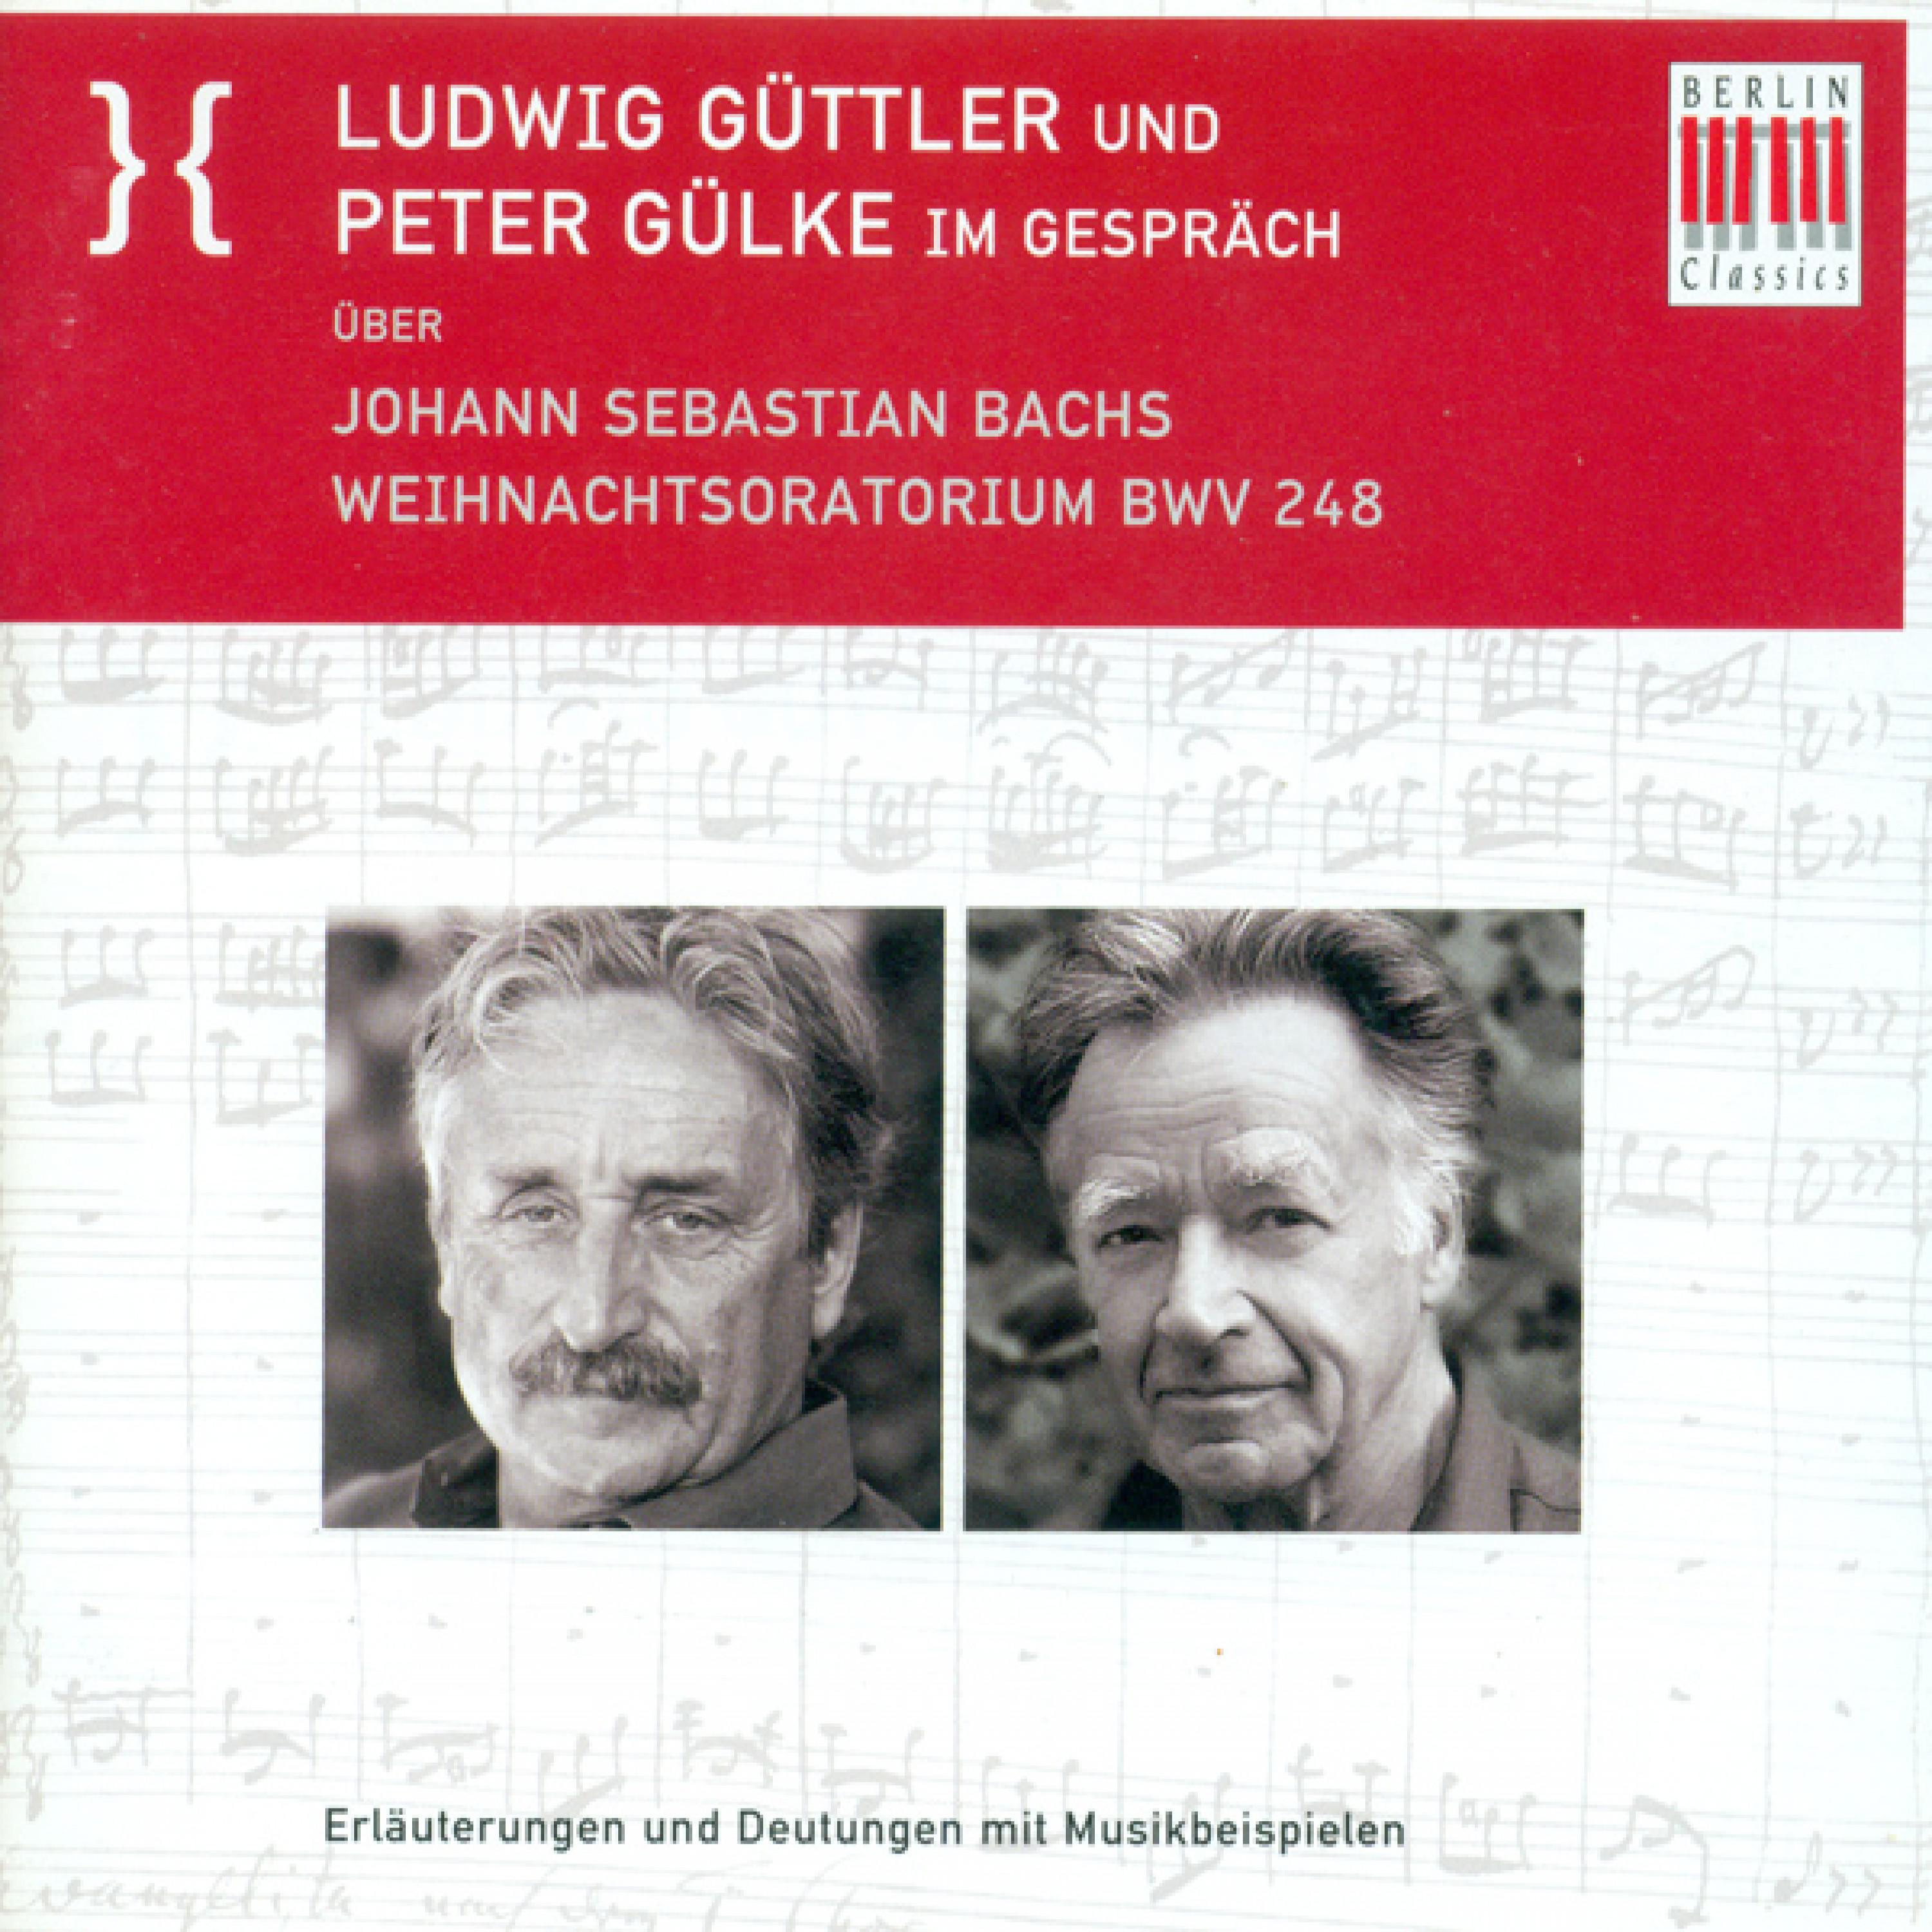 Ludwig Guttler und Peter Gulke Im Gesprach uber Johann Sebastian Bach' s Weihnachtsoratorium BWV 248: Die Imperative zum Eingang: das Tun